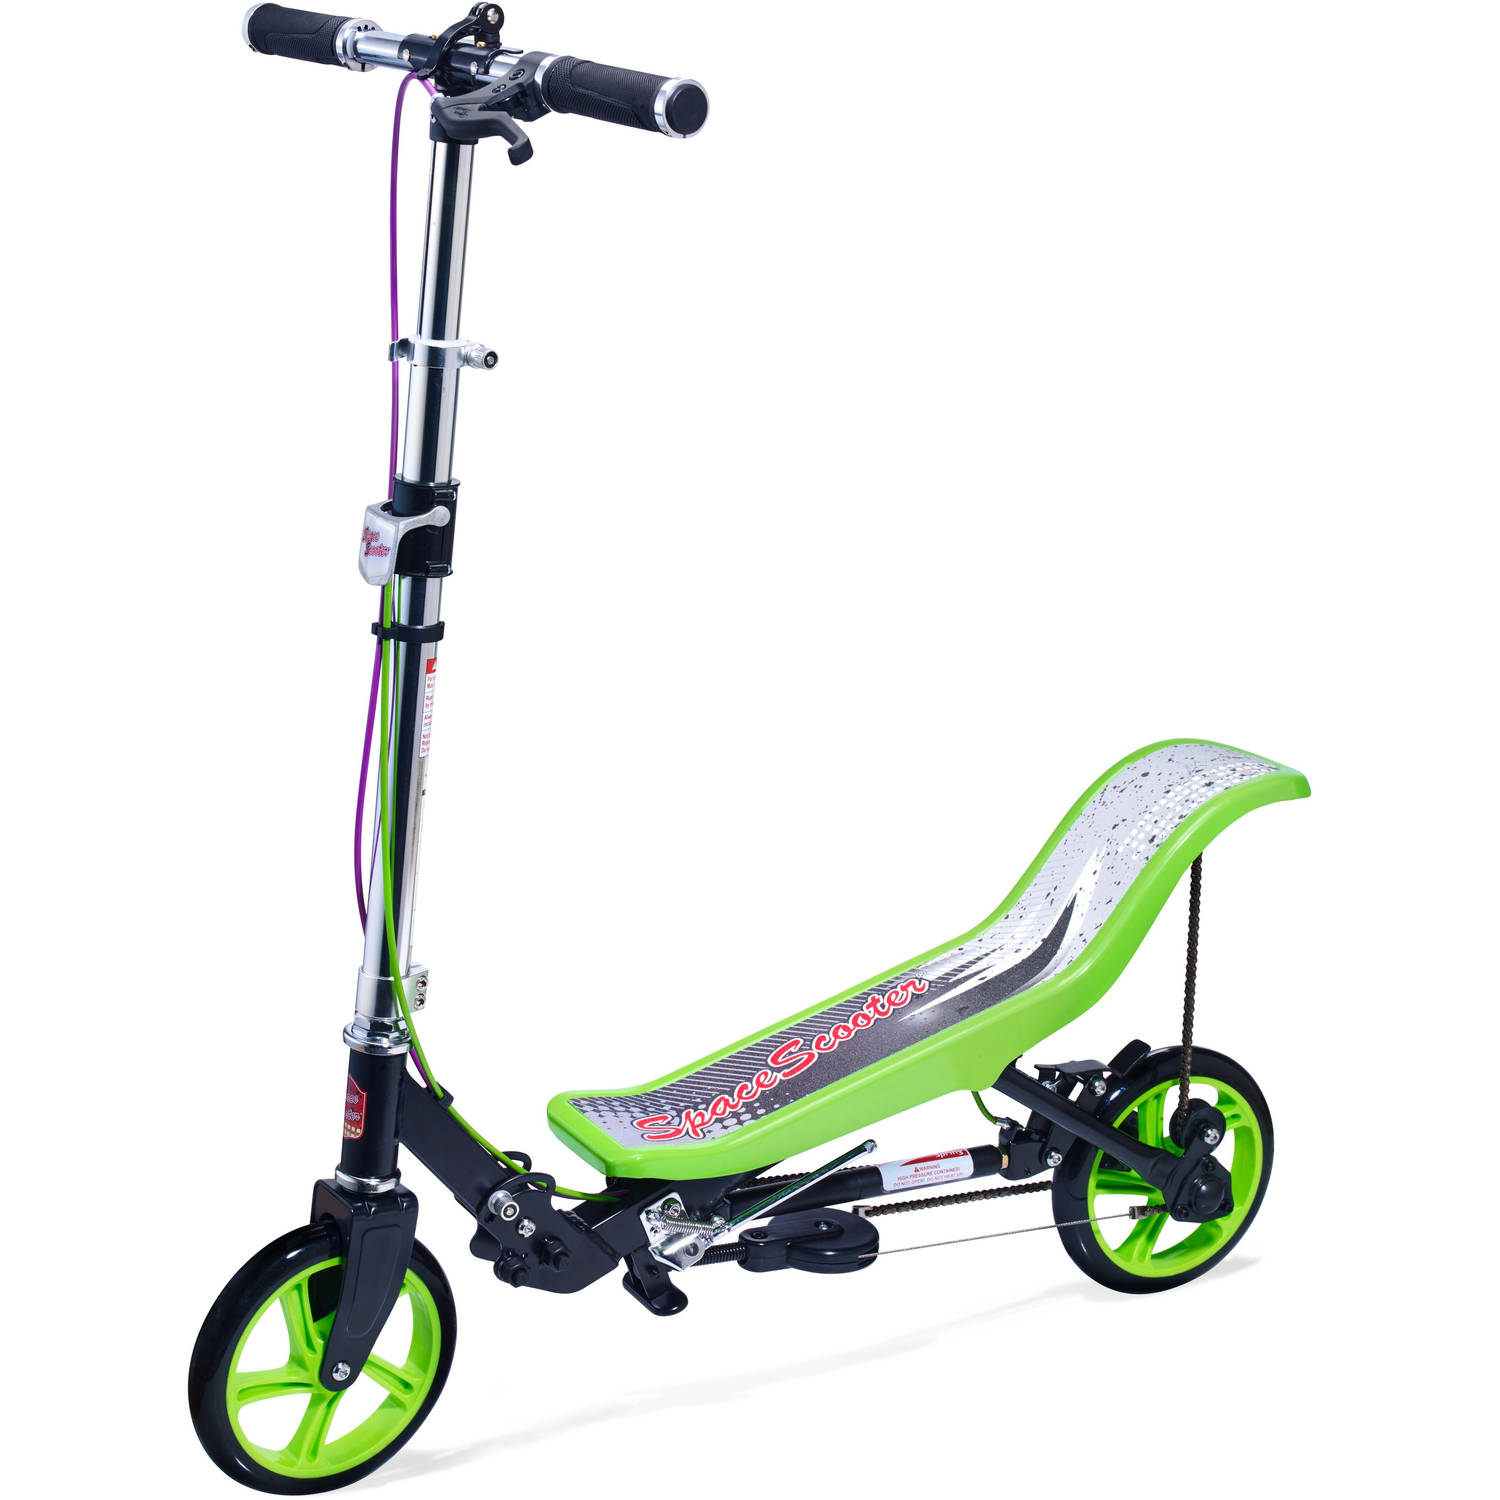 Space scooter x590 pro step groen-zwart + beschermset